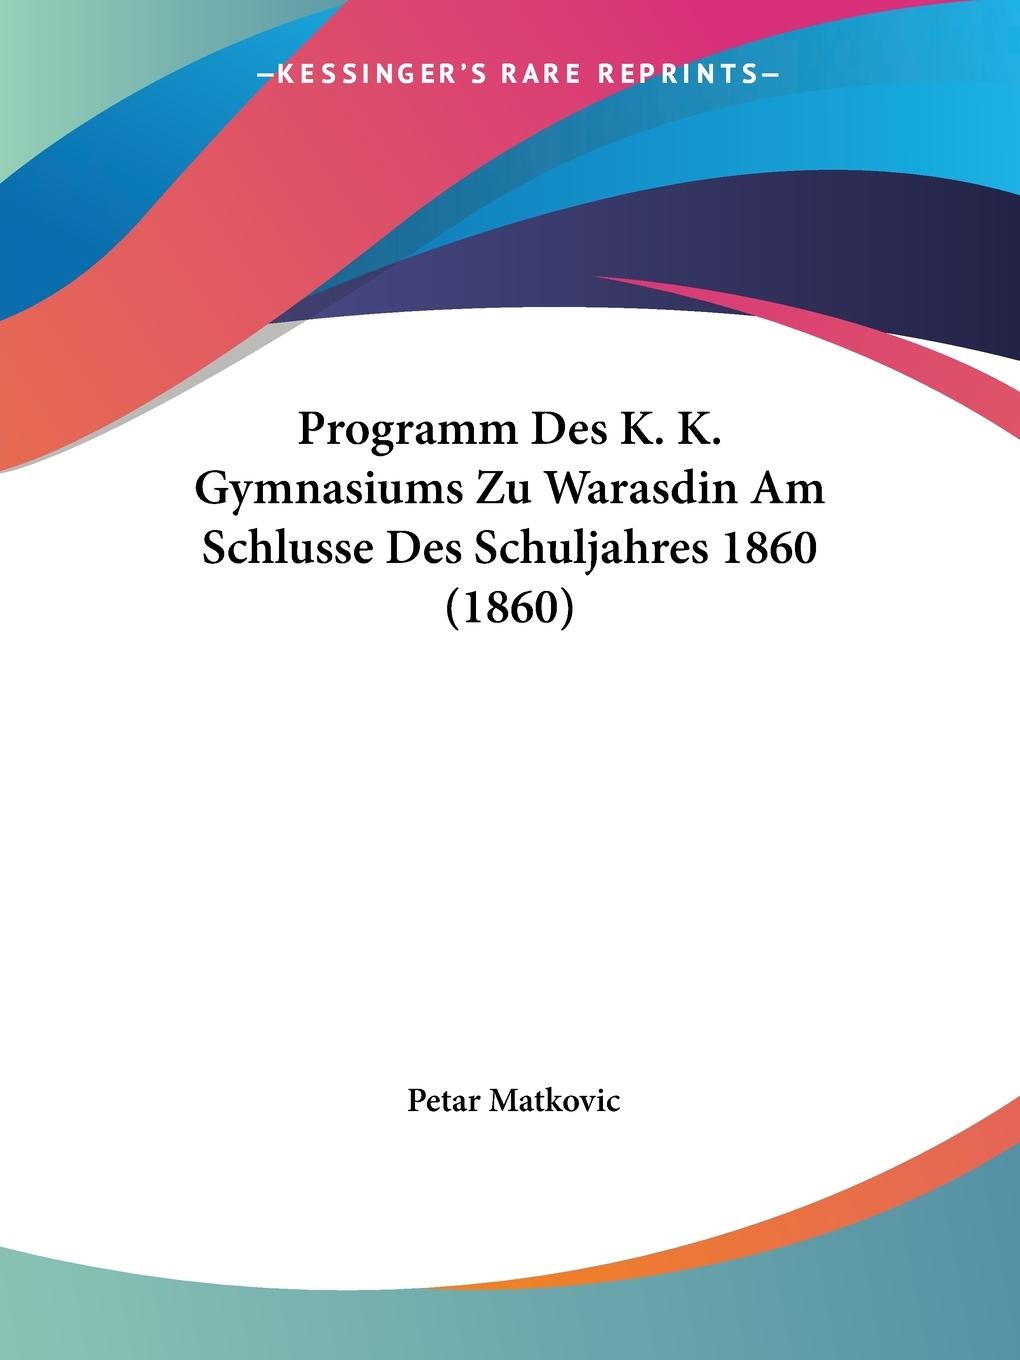 Programm Des K. K. Gymnasiums Zu Warasdin Am Schlusse Des Schuljahres 1860 (1860) - Matkovic, Petar